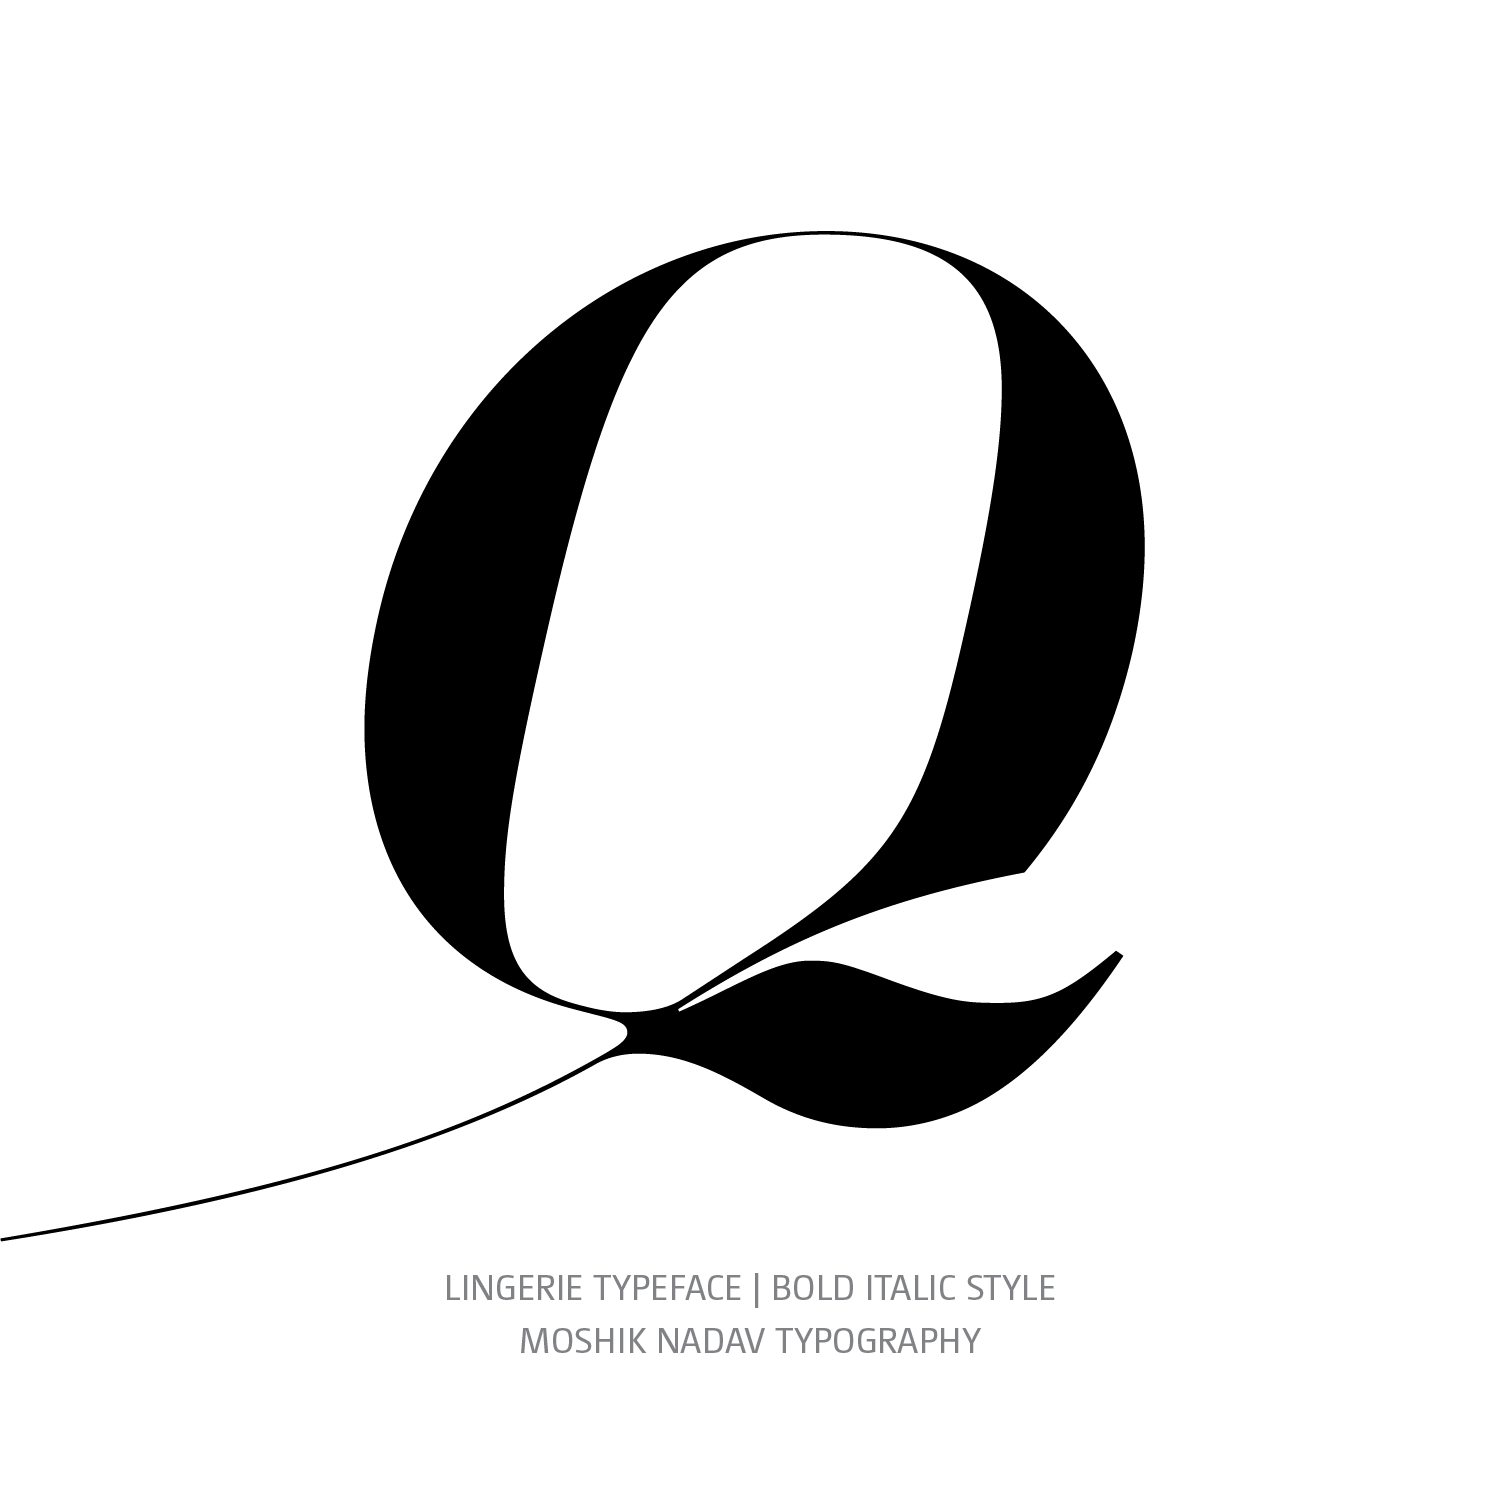 Lingerie Typeface Bold Italic Q